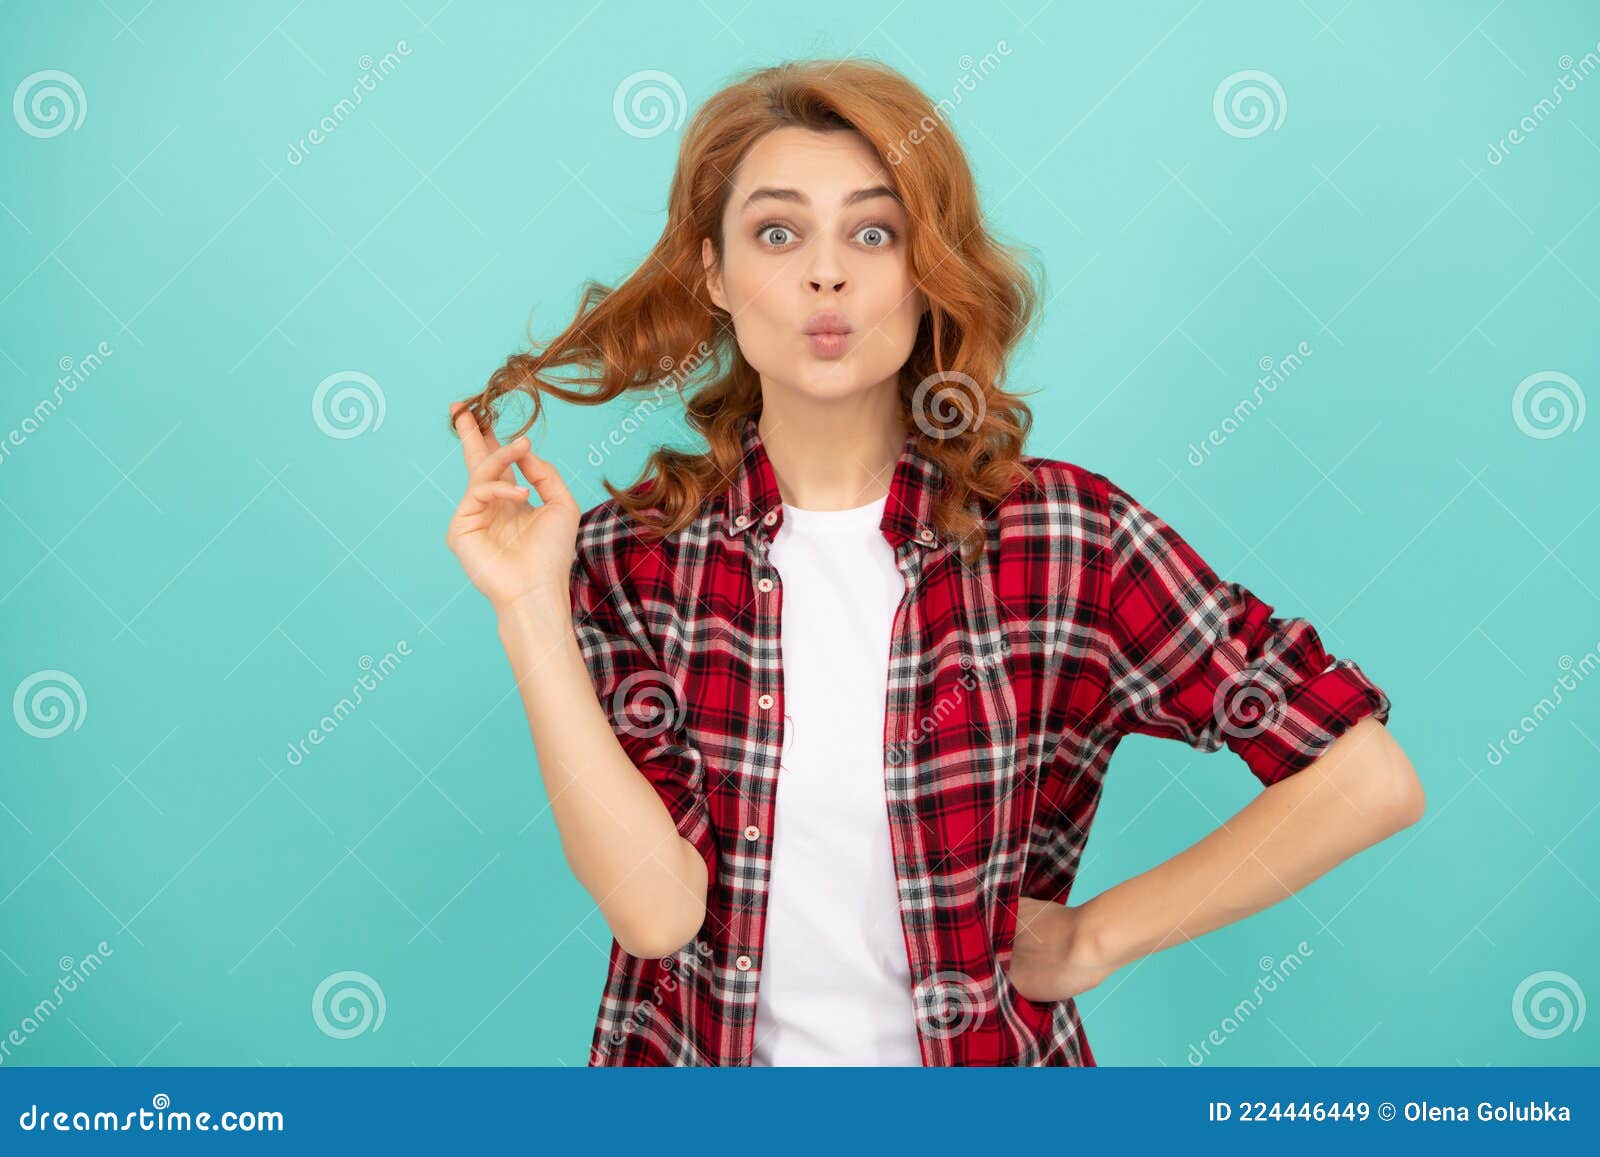 Declaración Superar Escepticismo Modelo Femenino En Camisa a Cuadros. Bonito Aspecto De Una Joven Sonriente.  Mujer De Cabello Rojo. Imagen de archivo - Imagen de emocional, checkered:  224446449